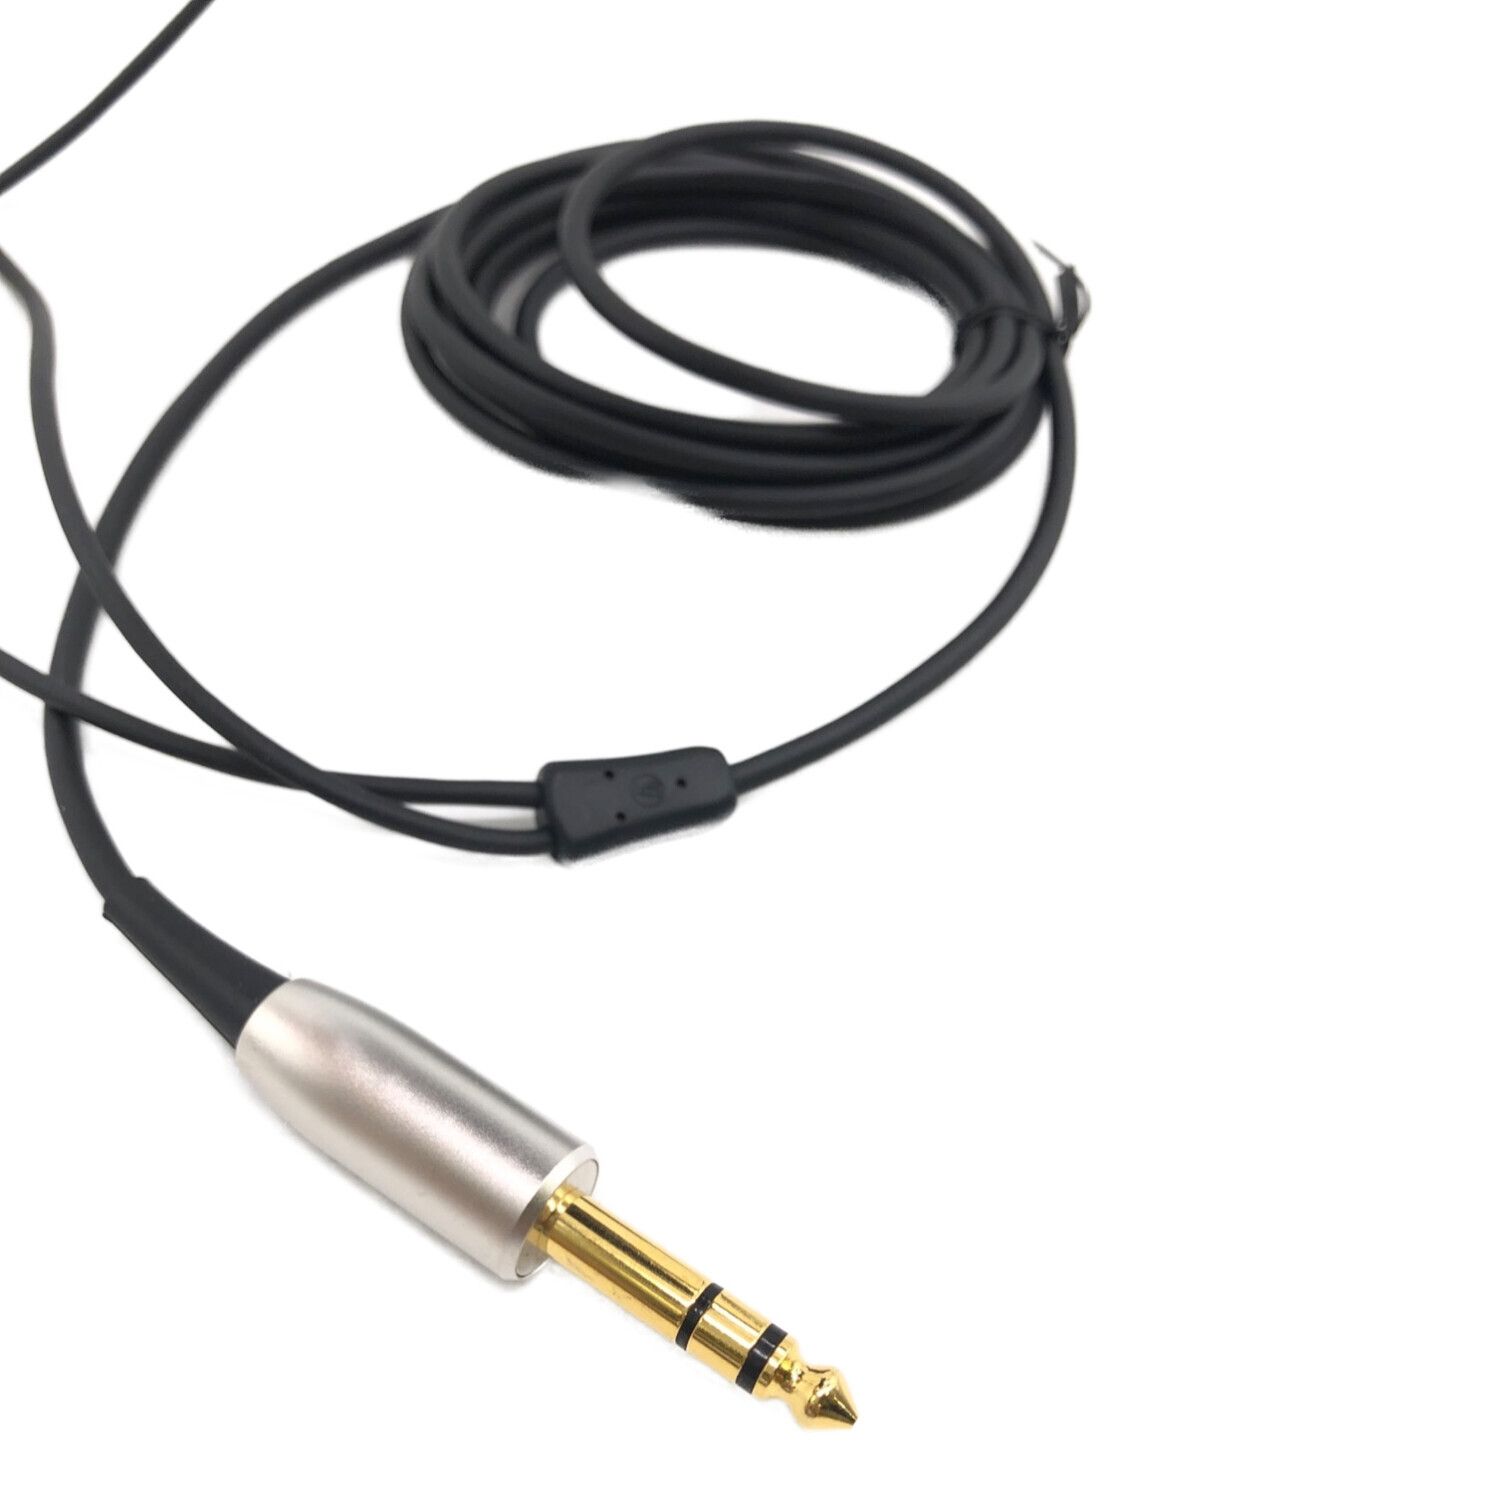 audio-technica (オーディオテクニカ) ヘッドホン ATH-W5000